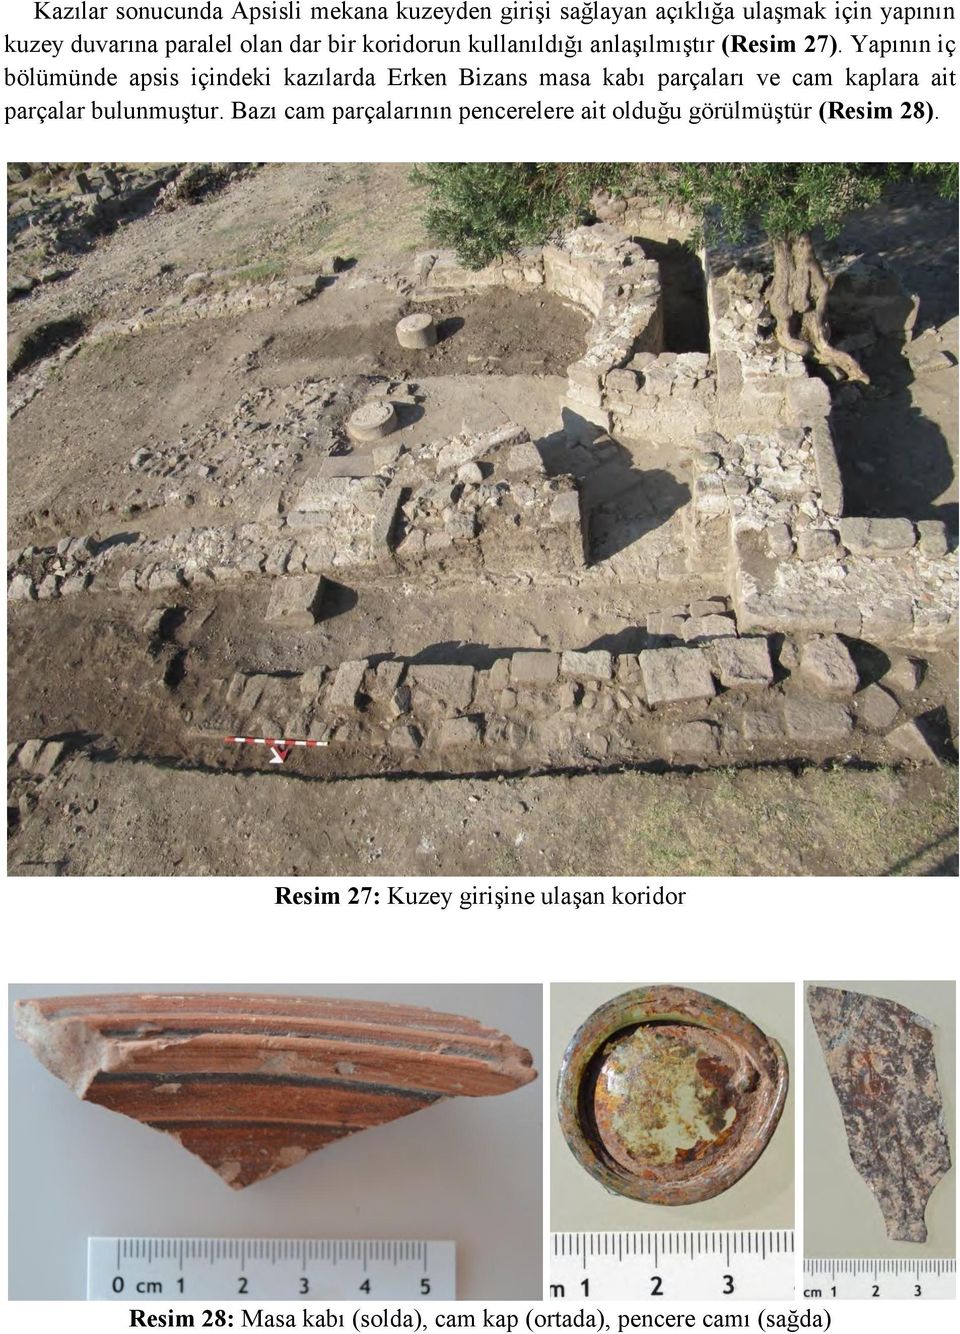 Yapının iç bölümünde apsis içindeki kazılarda Erken Bizans masa kabı parçaları ve cam kaplara ait parçalar